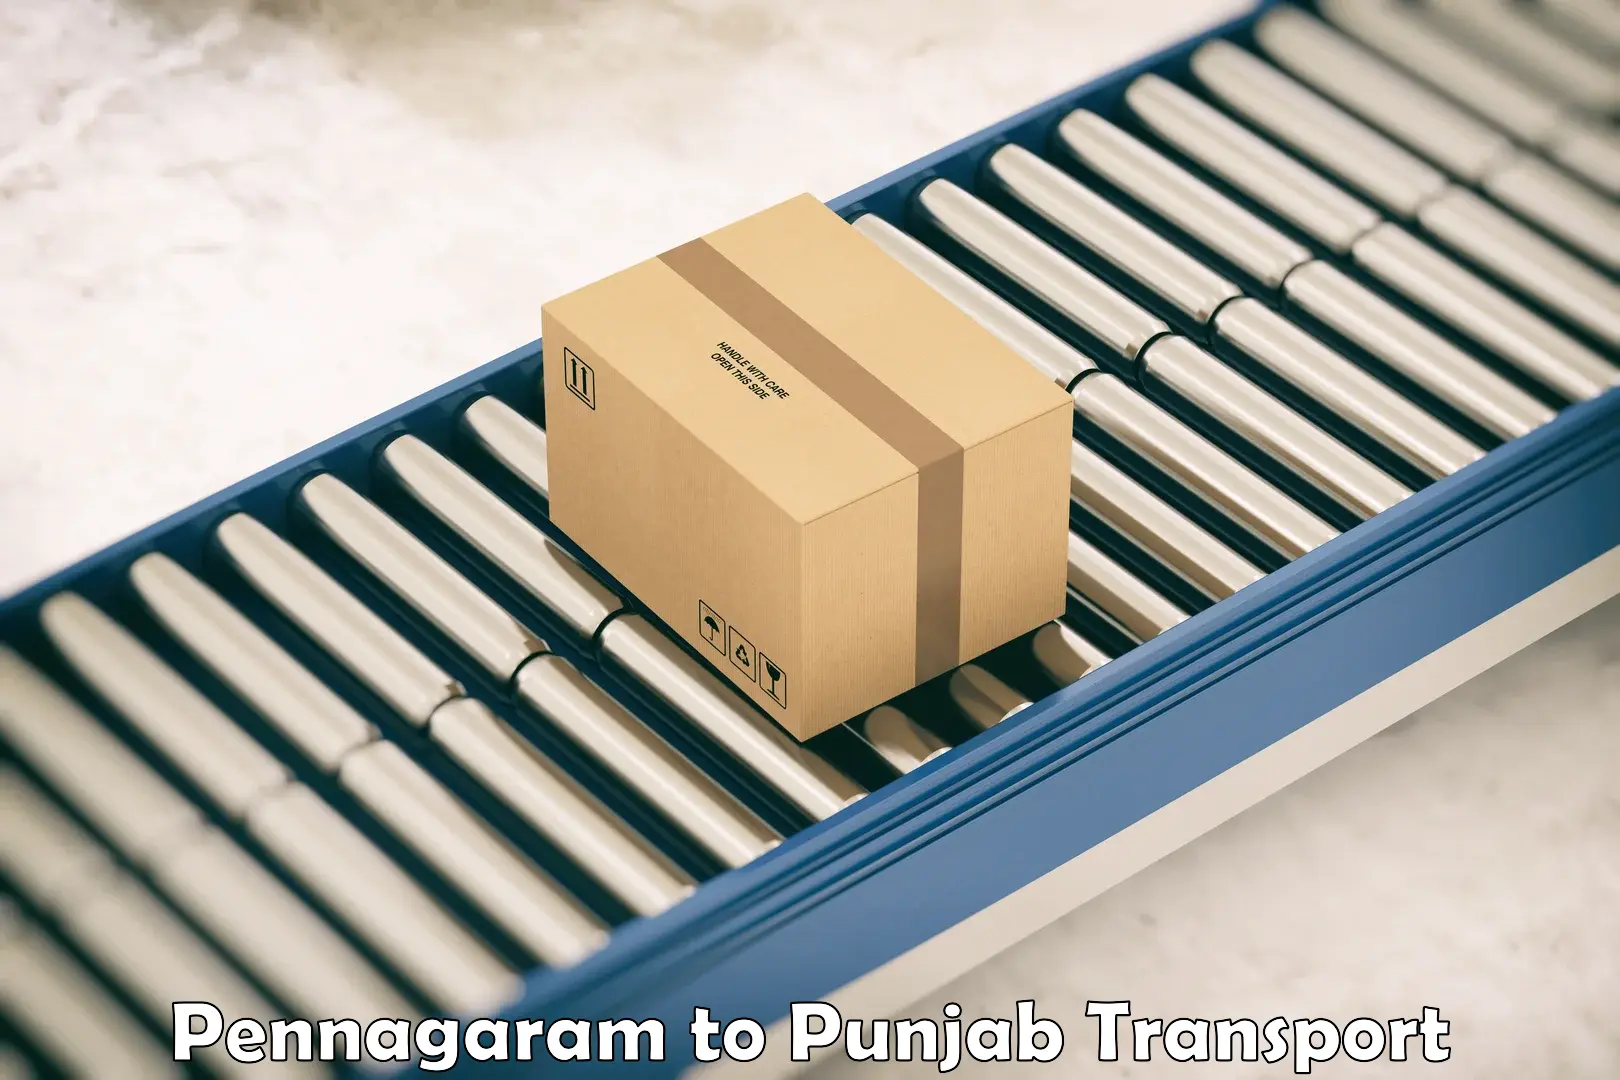 Air freight transport services Pennagaram to Khanna